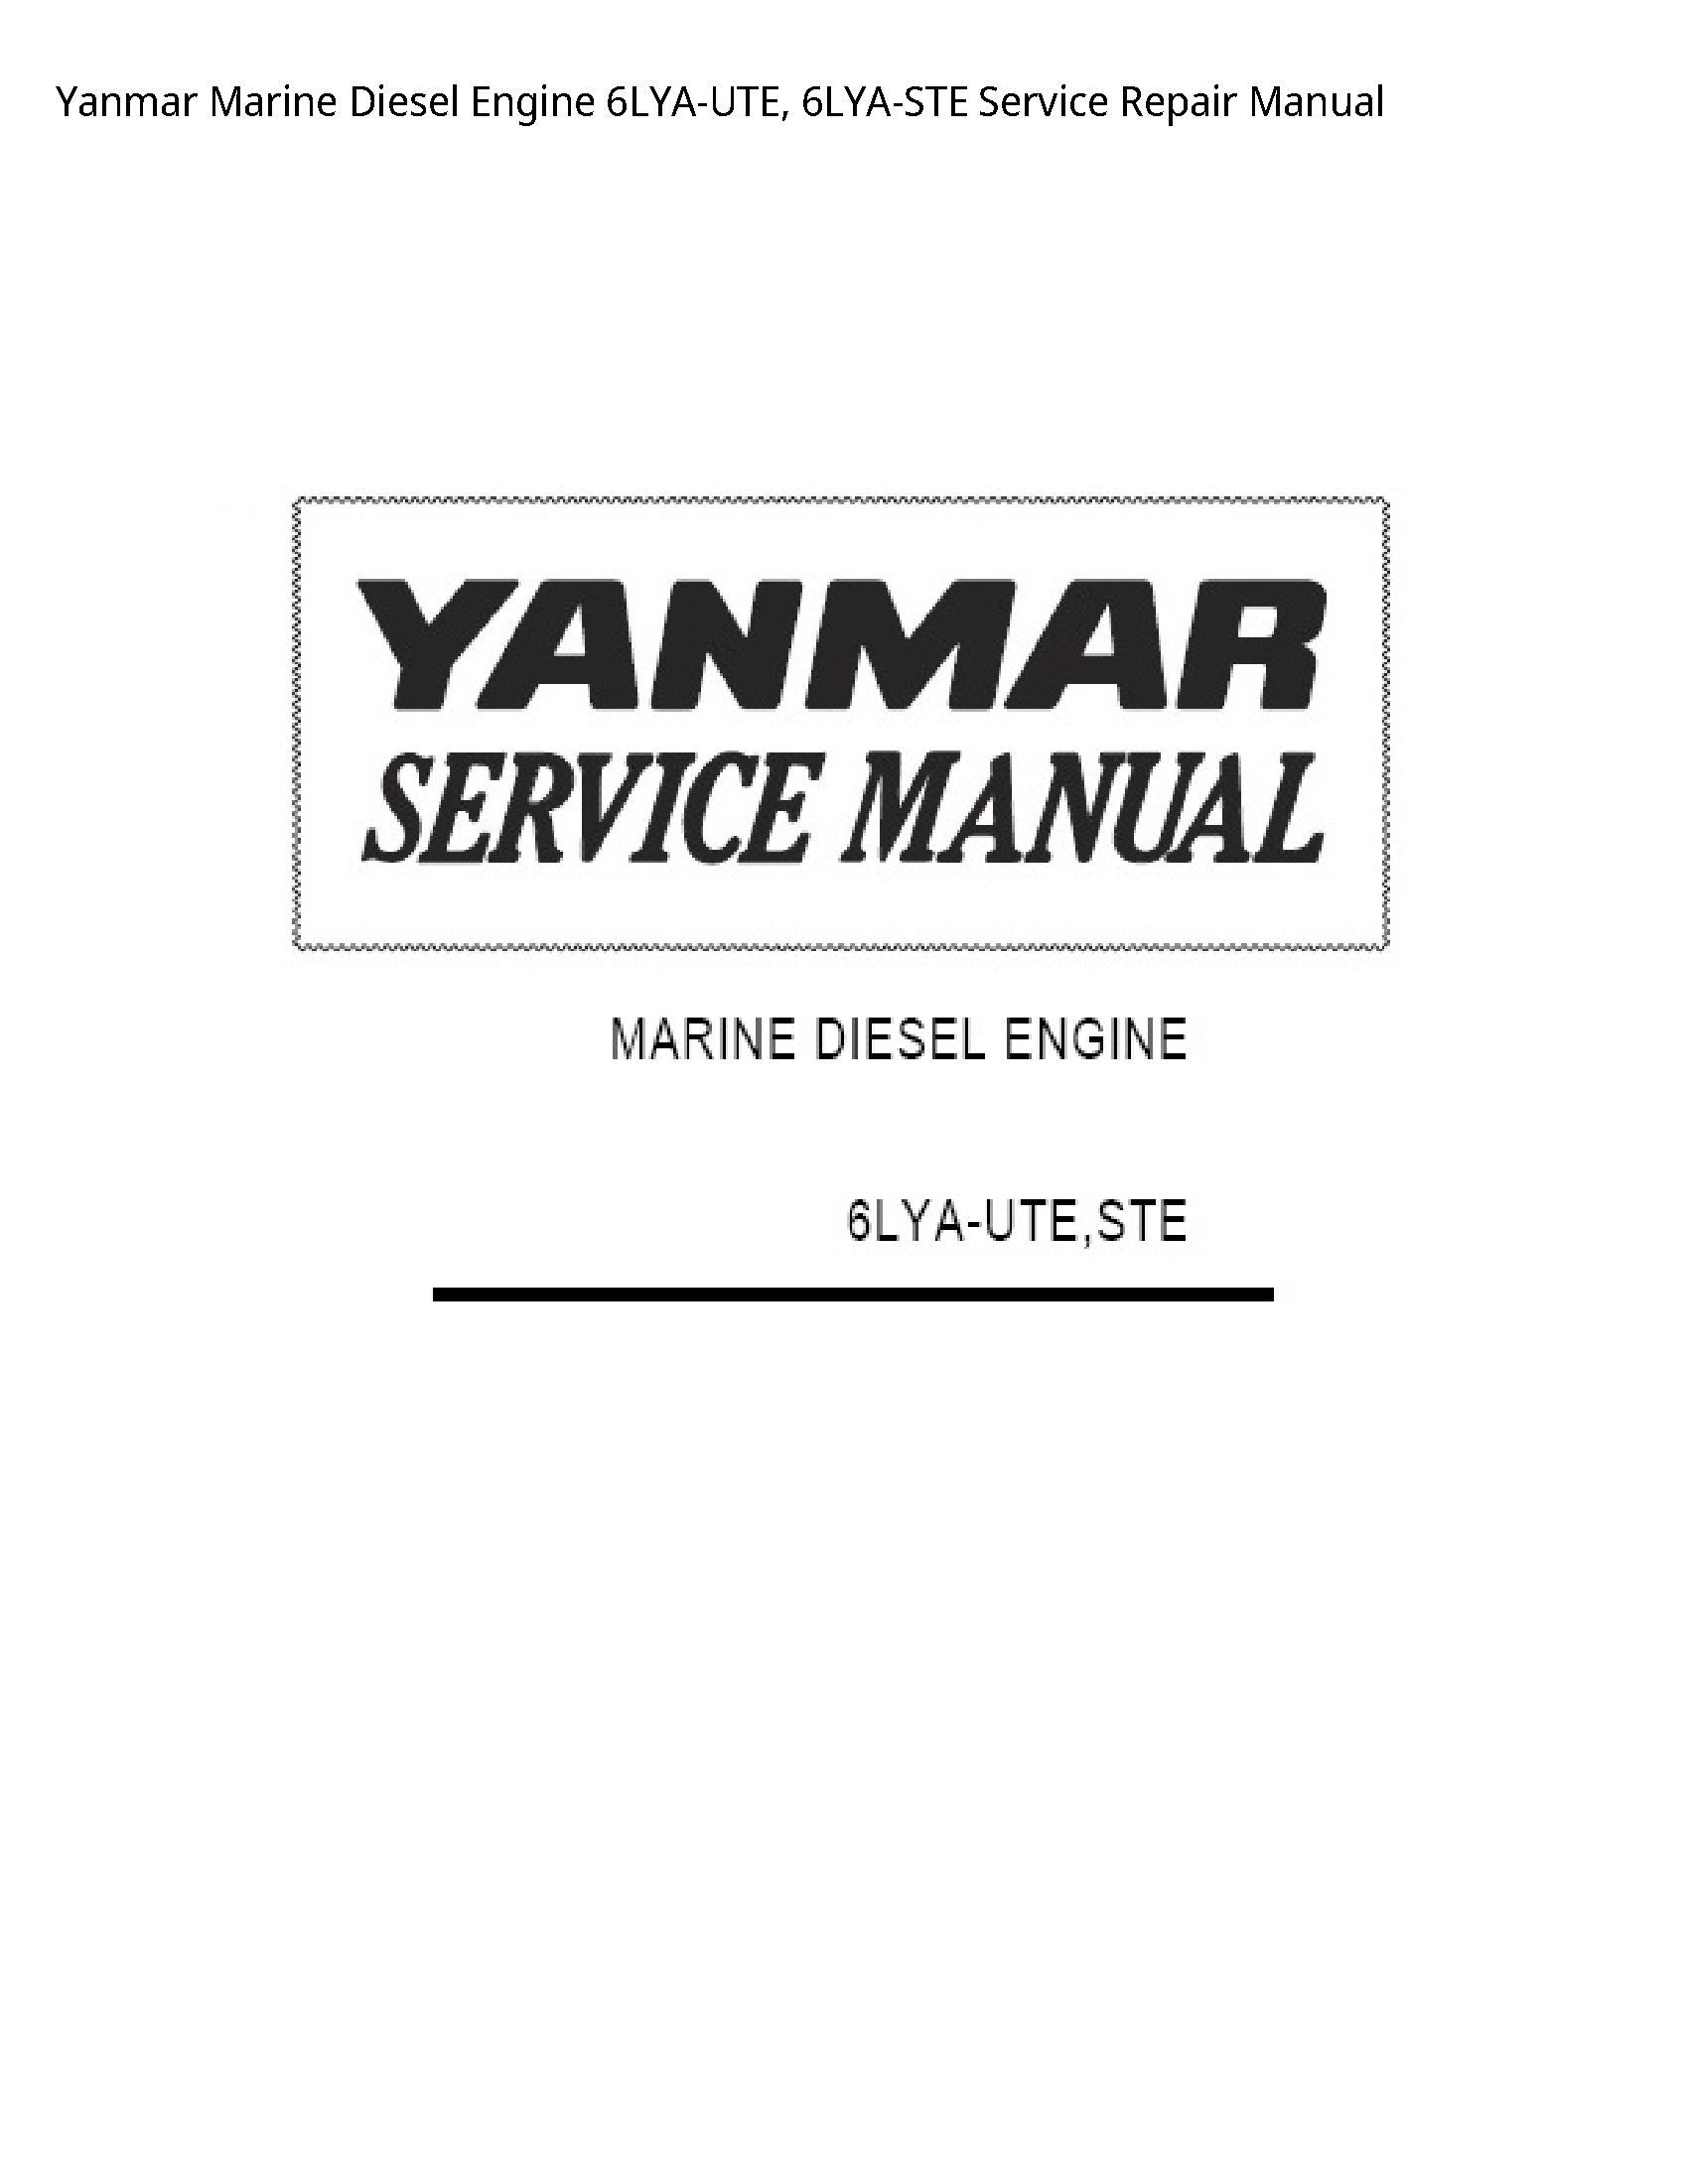 Yanmar 6LYA-UTE Marine Diesel Engine manual